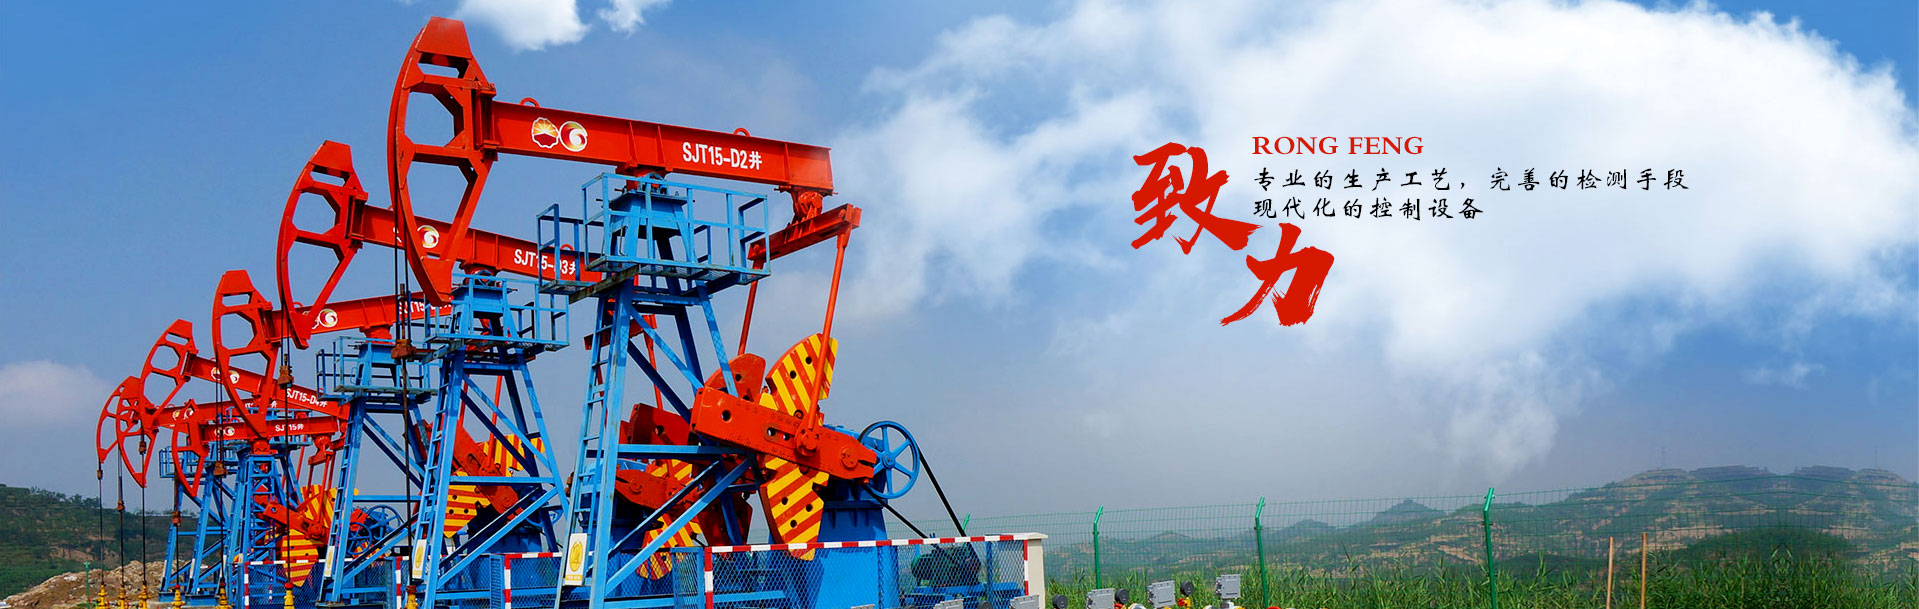 Henan Rongfeng Petroleum Machinery Co., Ltd